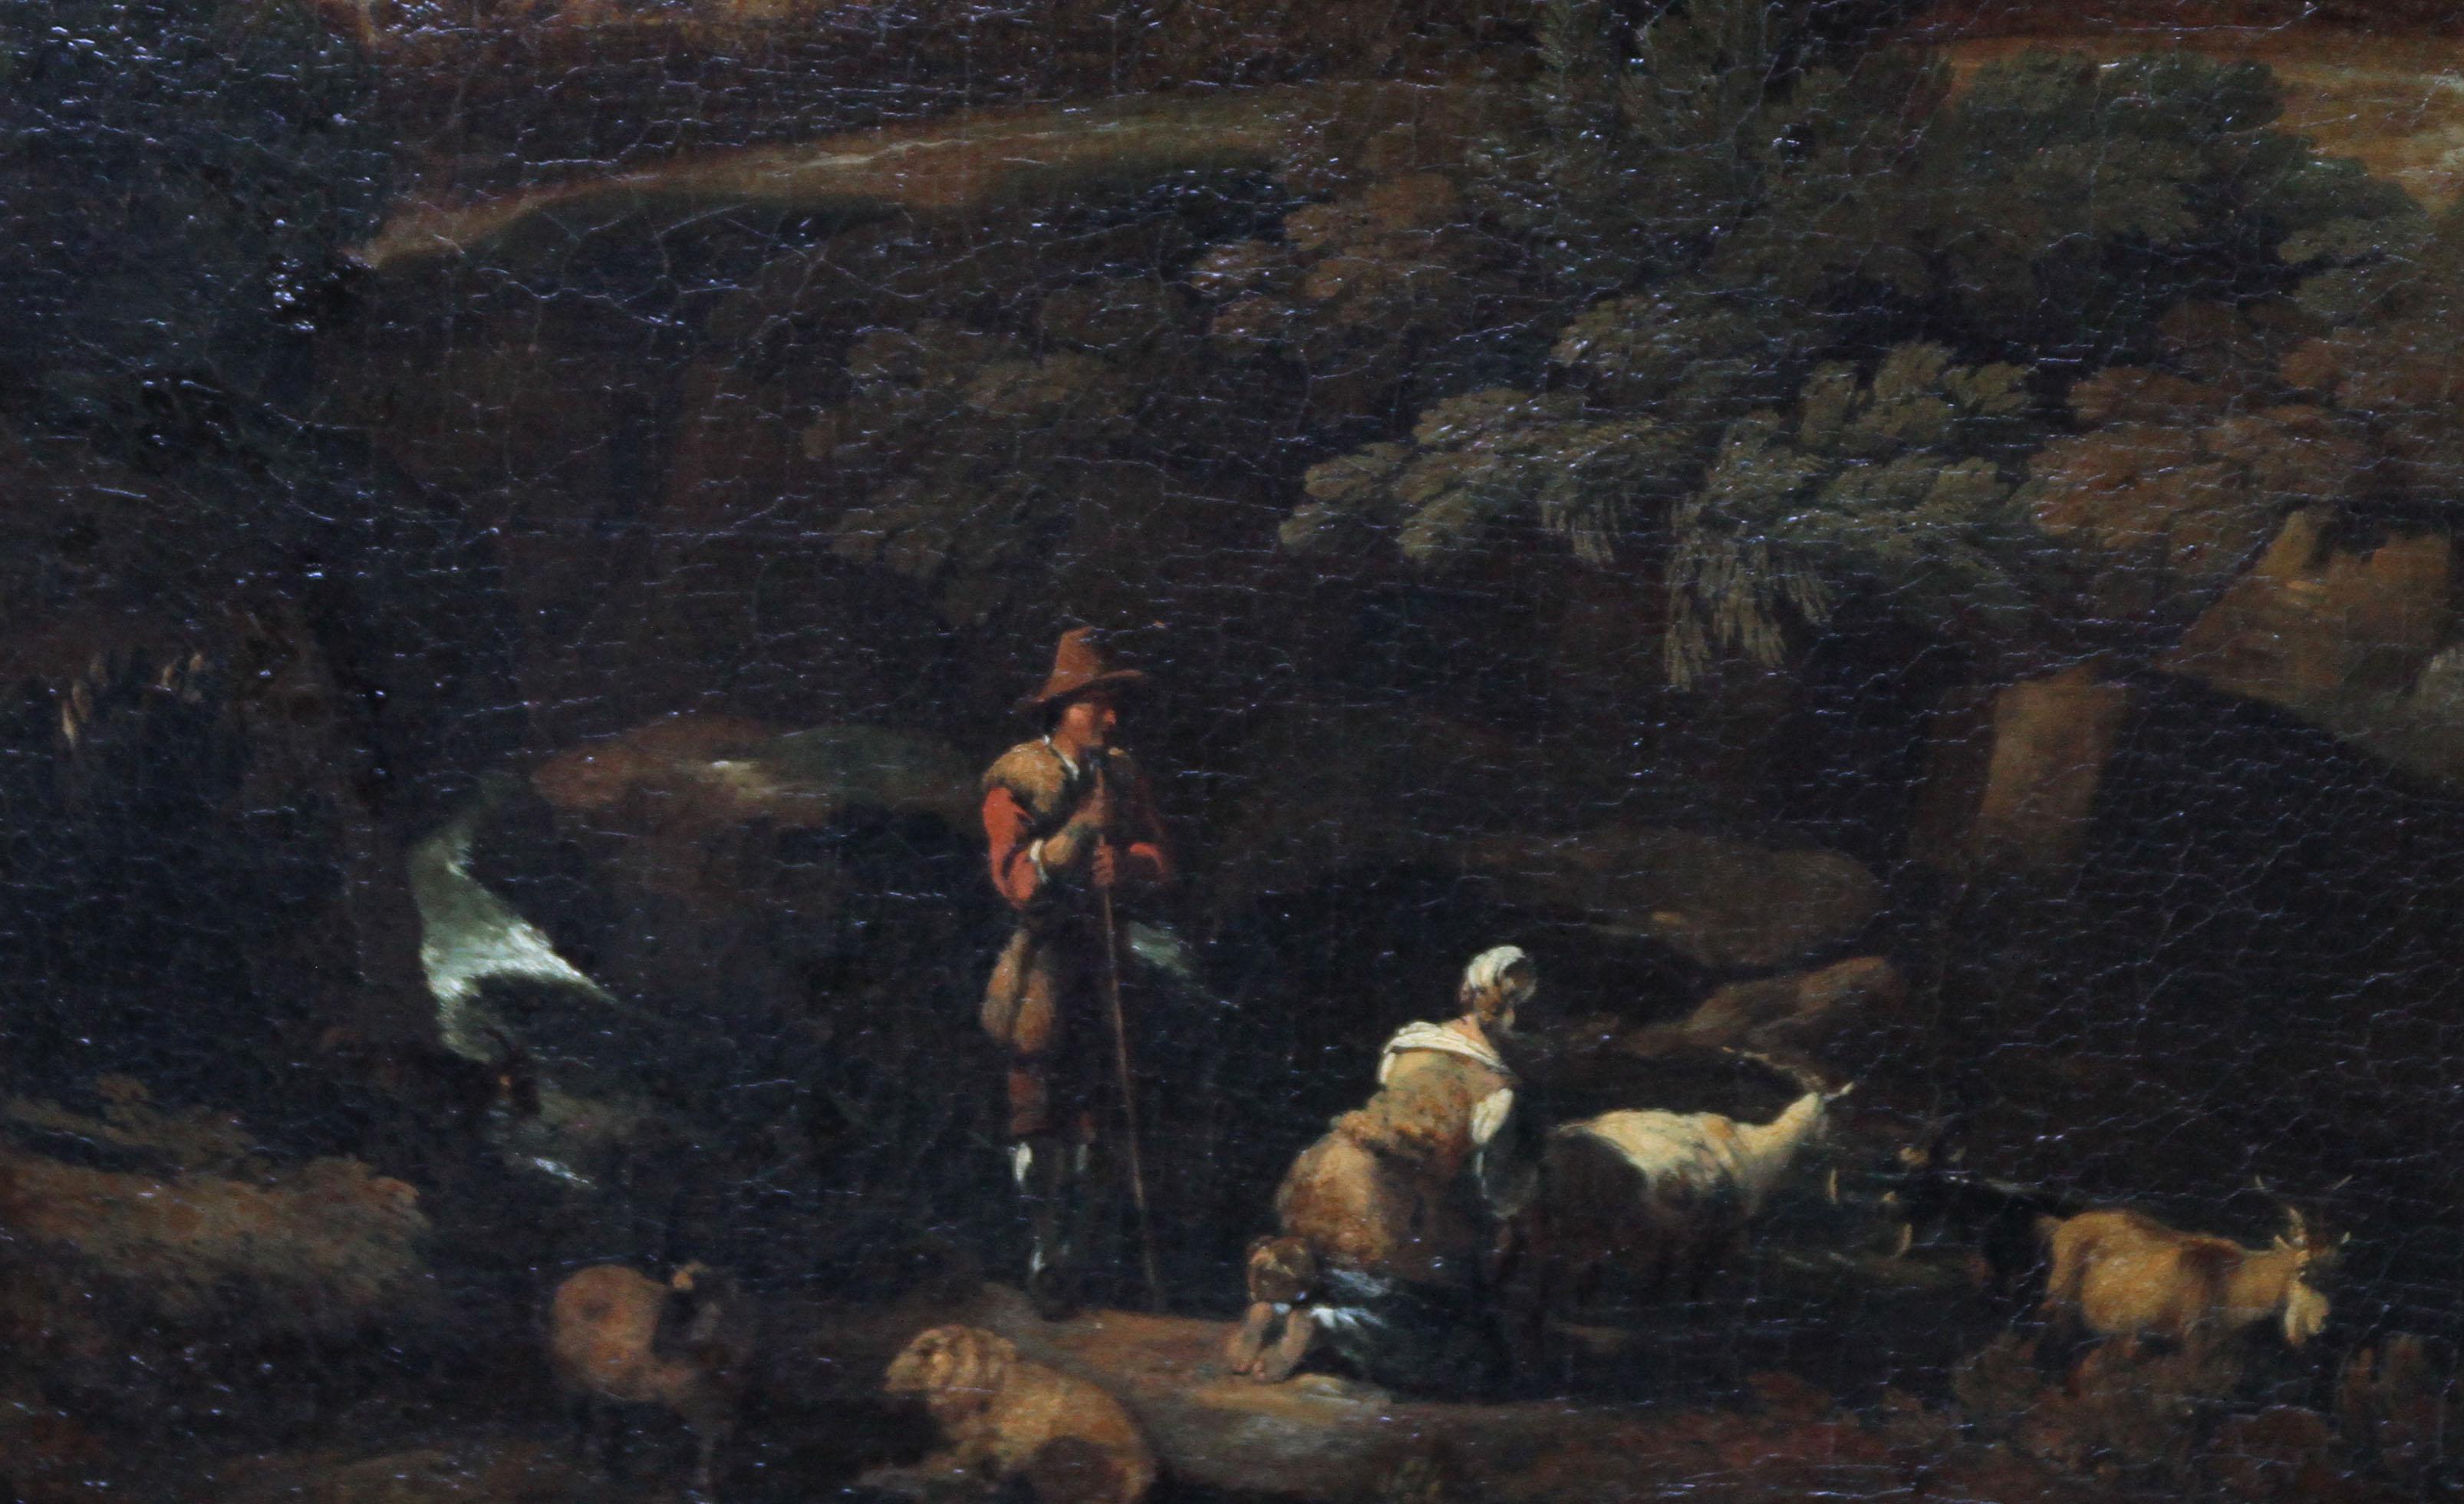 Ein zartes Capriccio einer arkadischen Landschaft in Öl auf Leinwand mit Figuren und Schafen und Ziegen im Vordergrund. Ein stürmischer Himmel und gesprengte Bäume bevölkern die Landschaft, und die Figuren sind sehr raffiniert und detailliert. Es